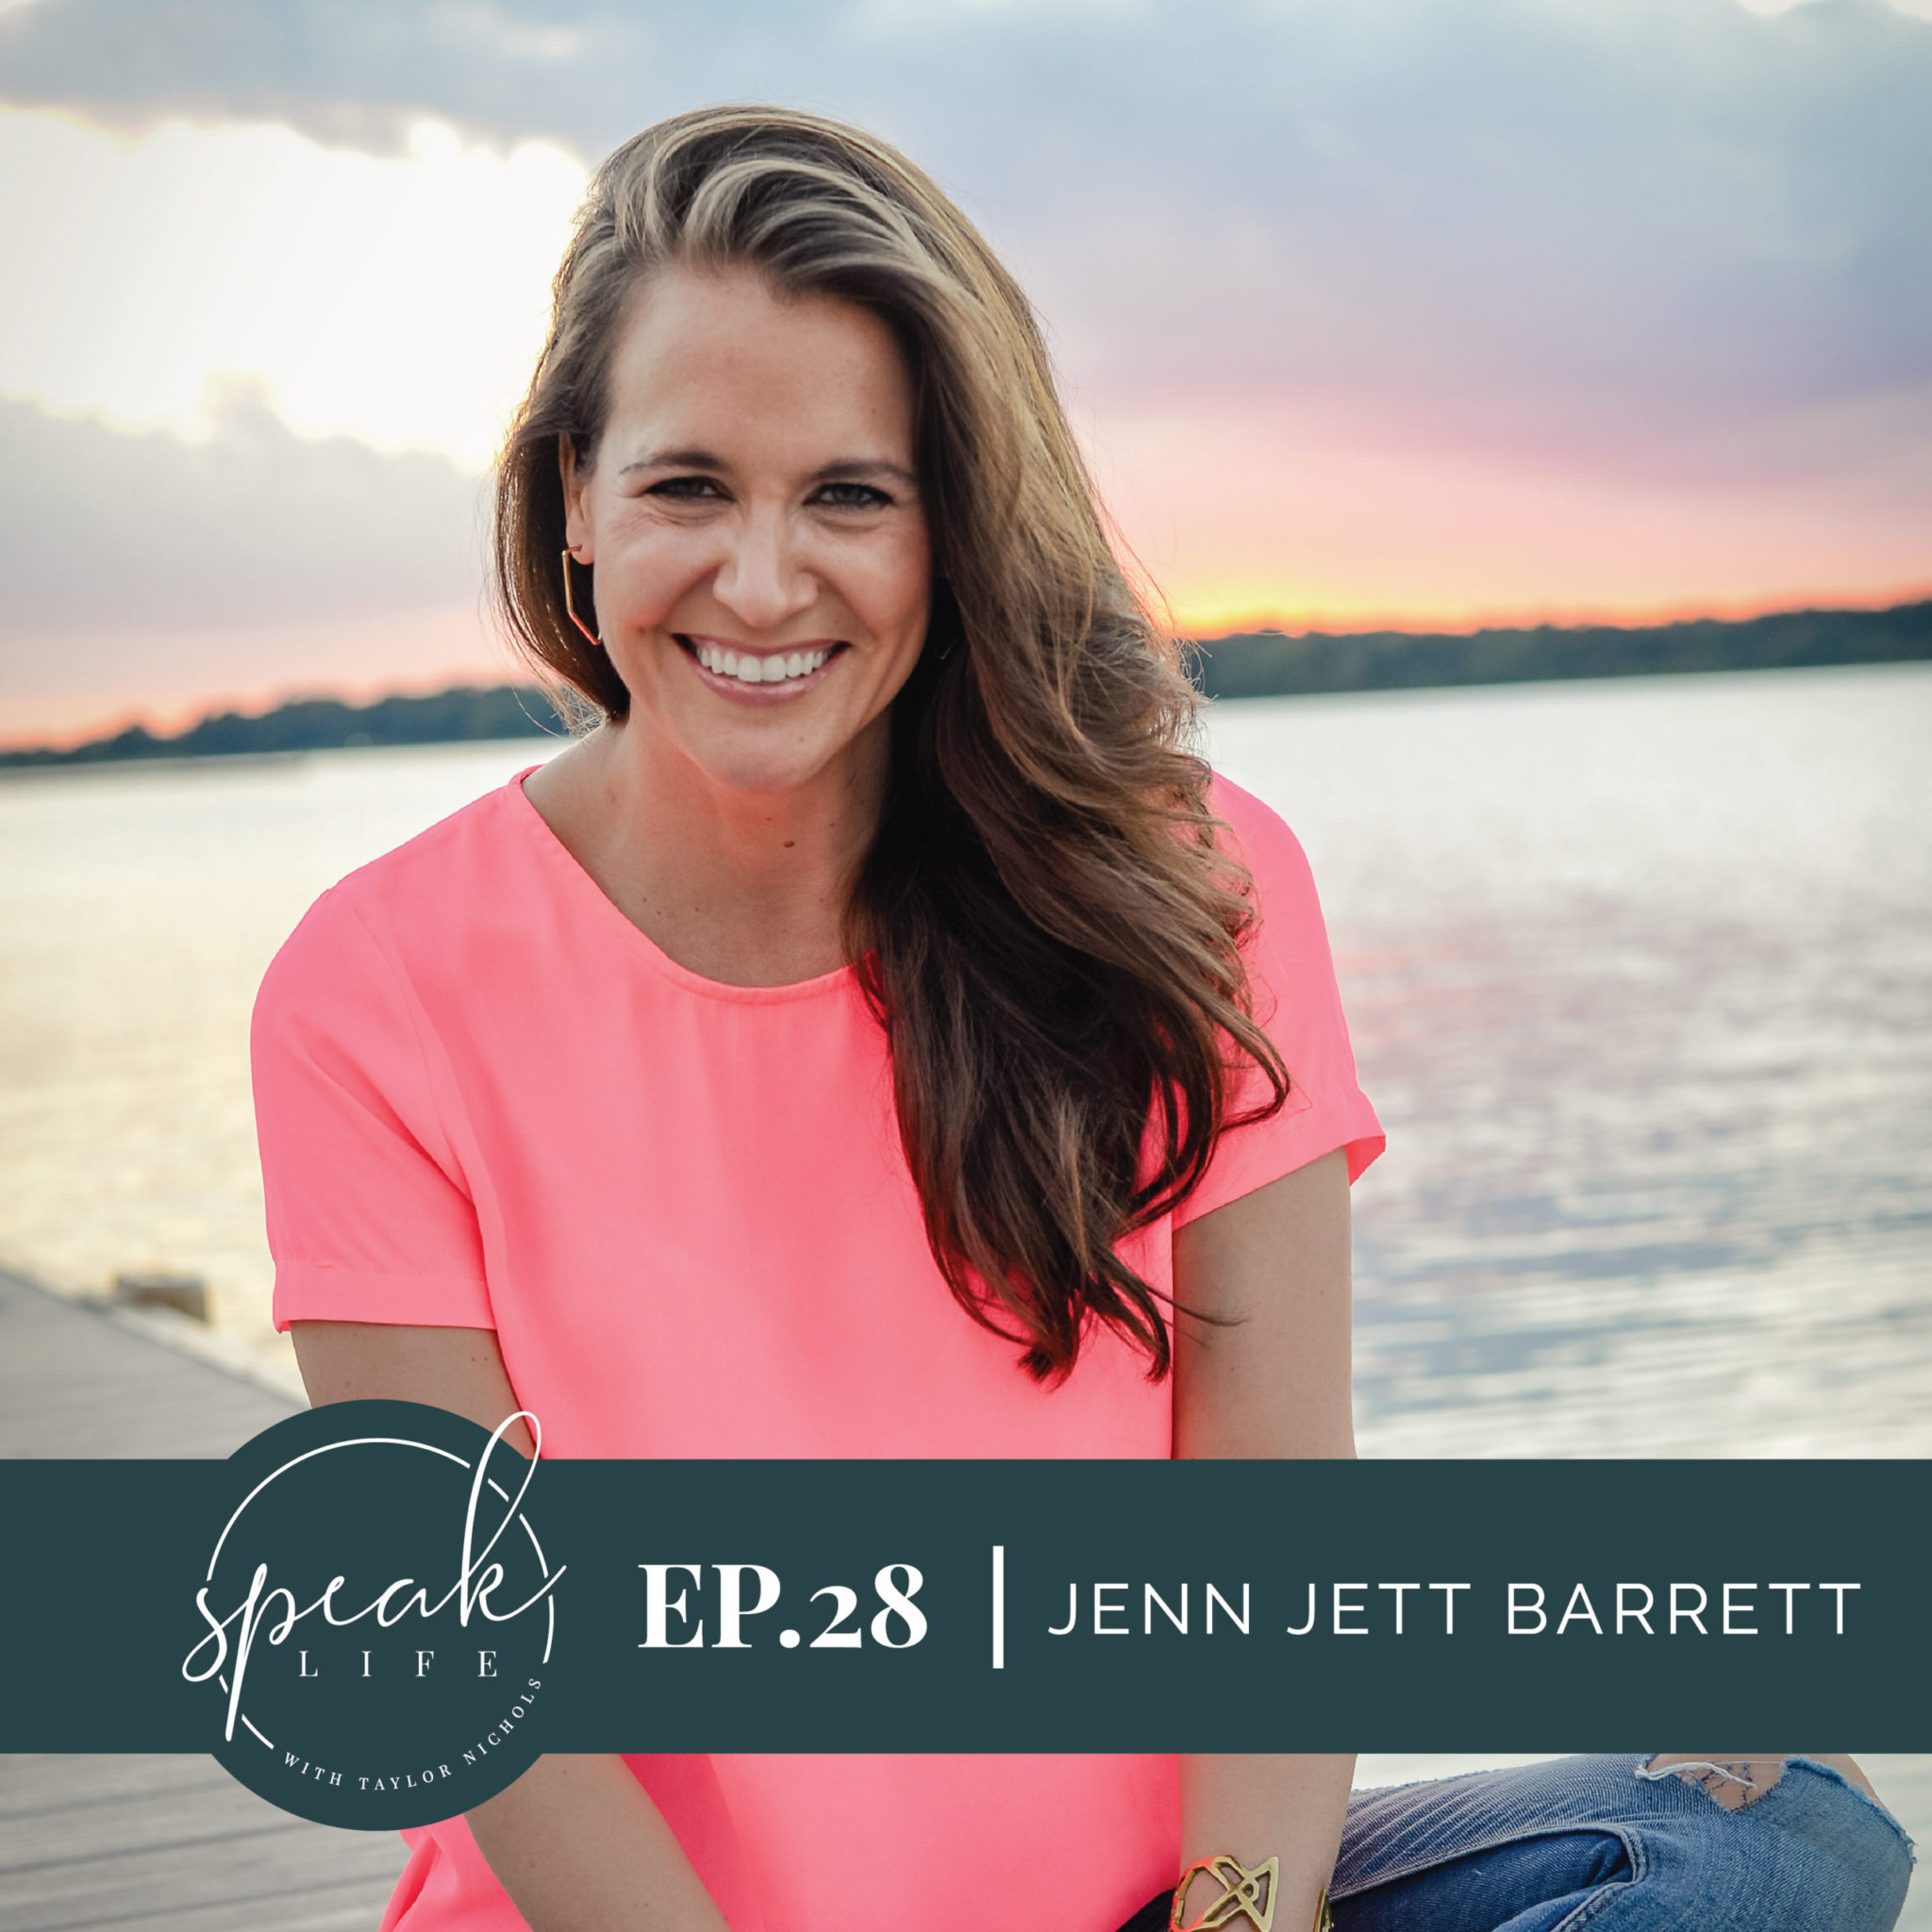 Episode 28. Jenn Jett Barrett – ‘Finding the next right step’